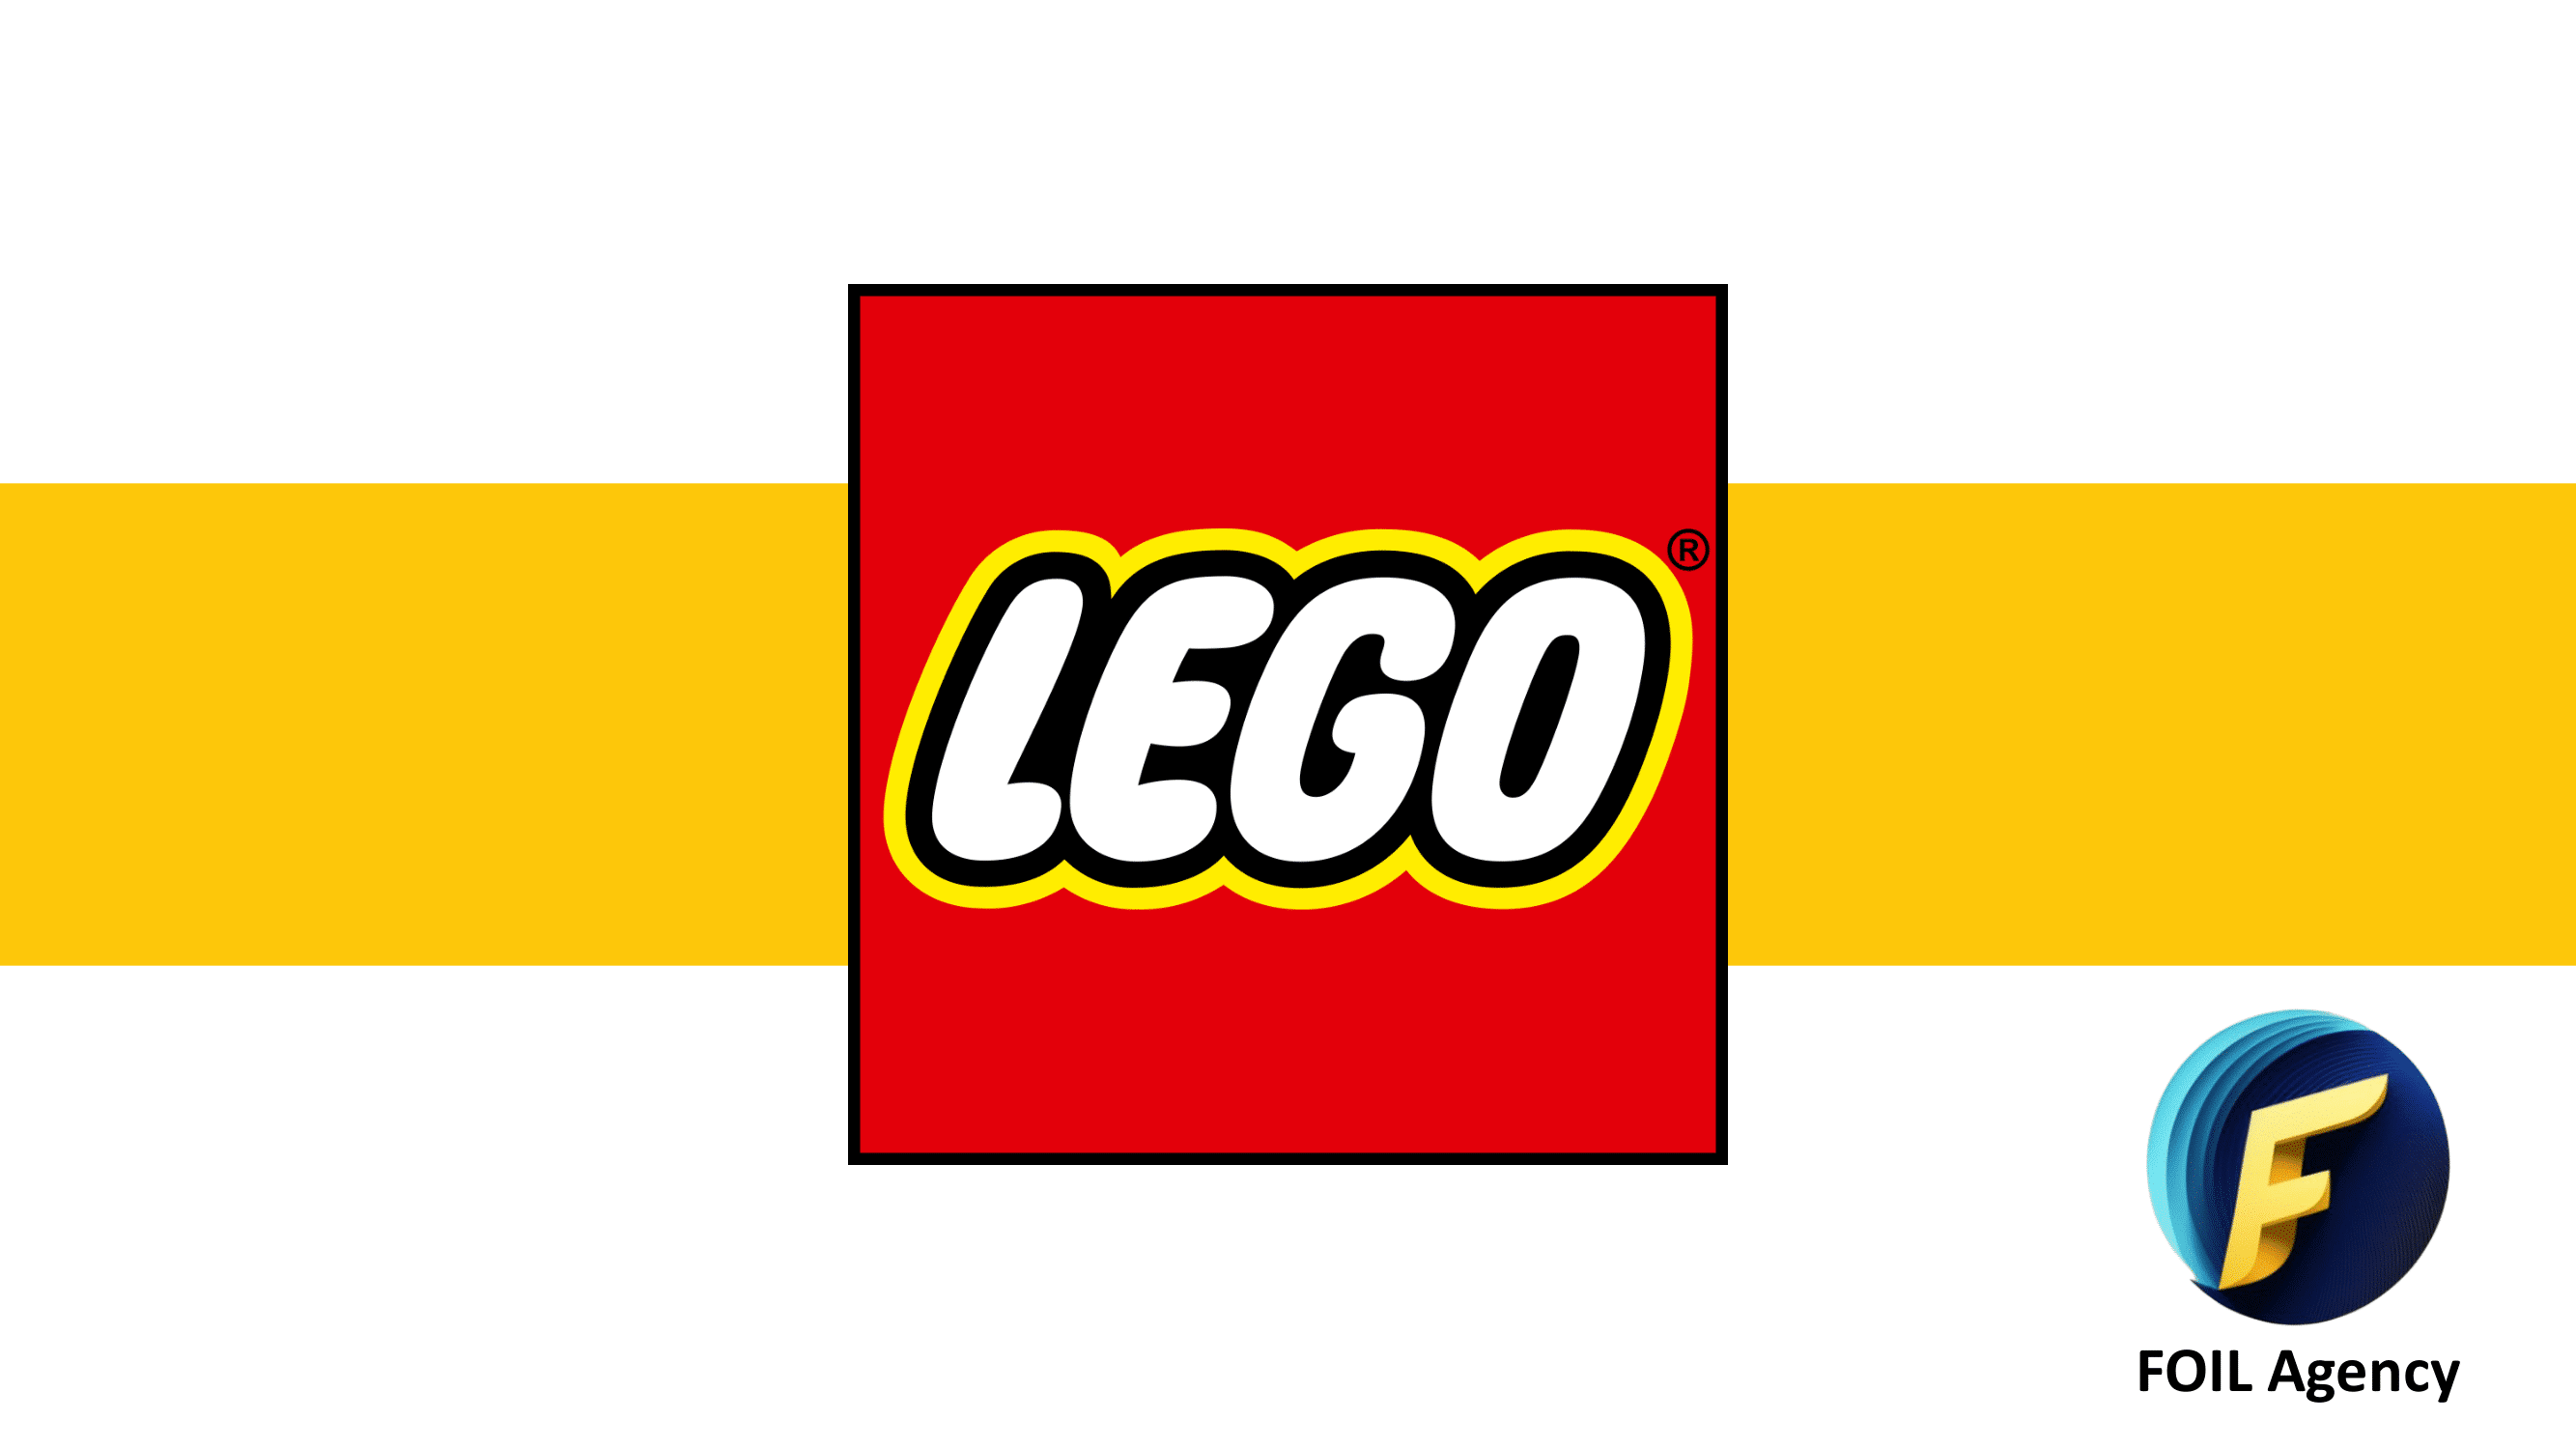 LEGO_Presentation_Foil_Agency-01